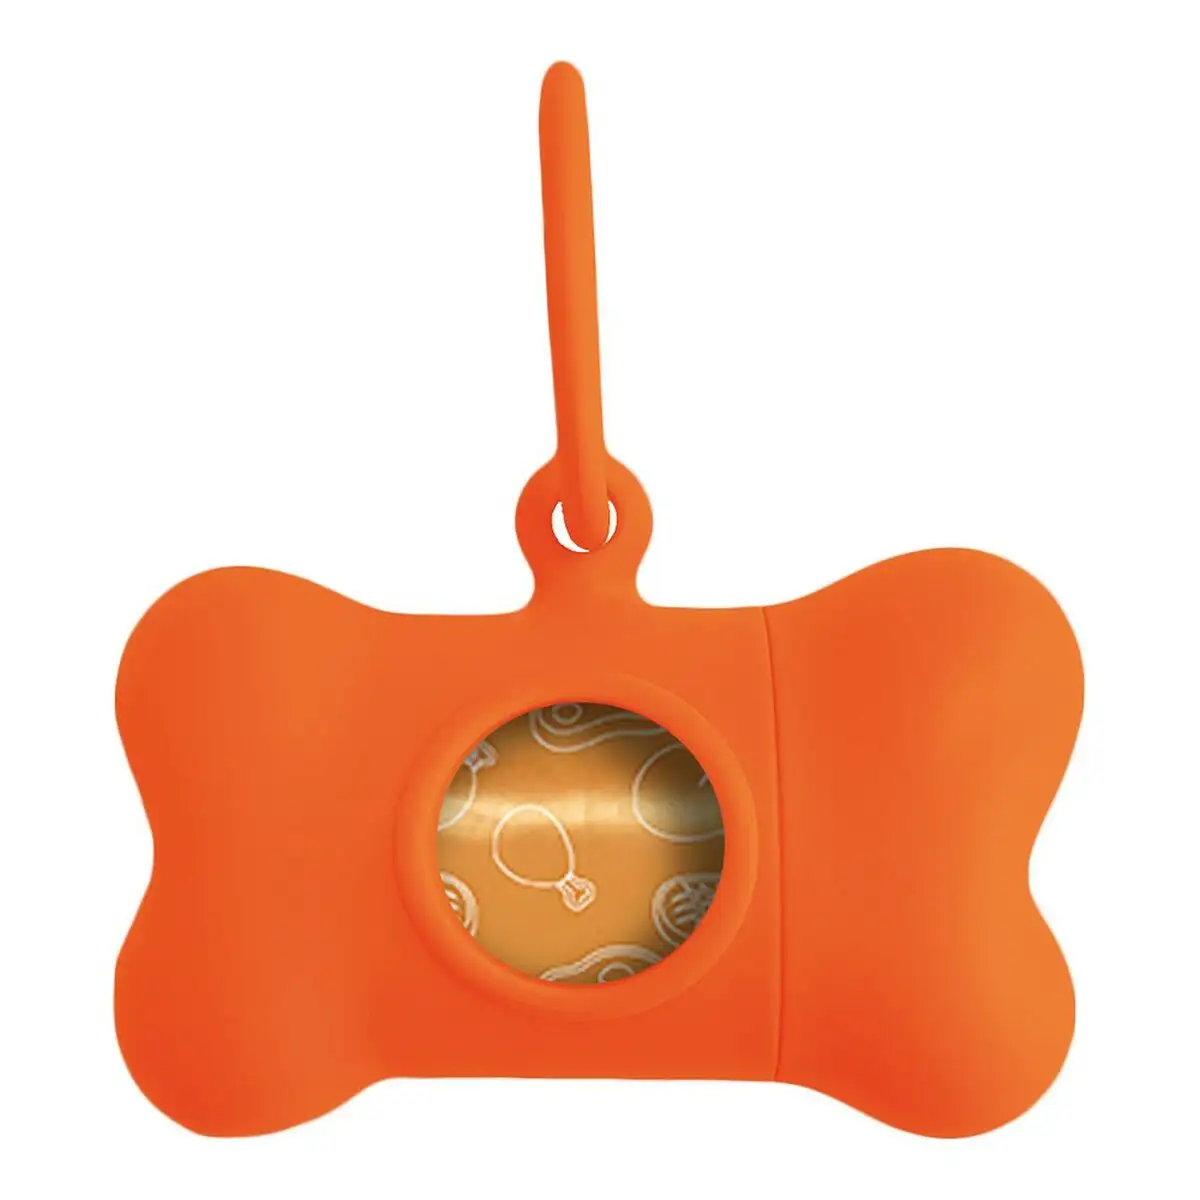 Distributeur de sacs pour animaux domestiques united pets bon ton neon chien orange 8 x 4 2 x 5 cm _7292. DIAYTAR SENEGAL - L'Art du Shopping Distinctif. Naviguez à travers notre gamme soigneusement sélectionnée et choisissez des produits qui définissent votre mode de vie.